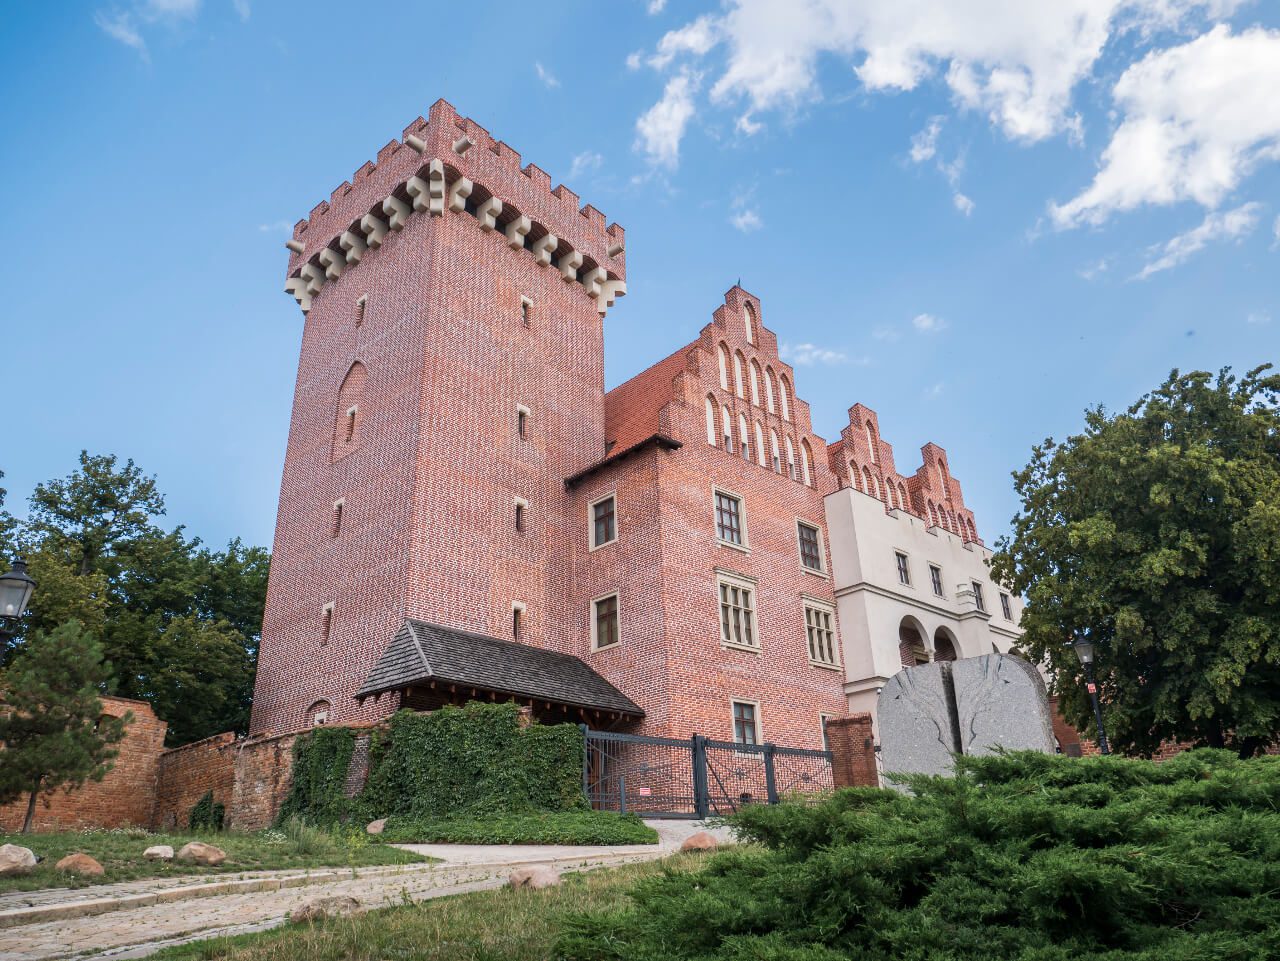 Odbudowany Zamek Królewski w Poznaniu